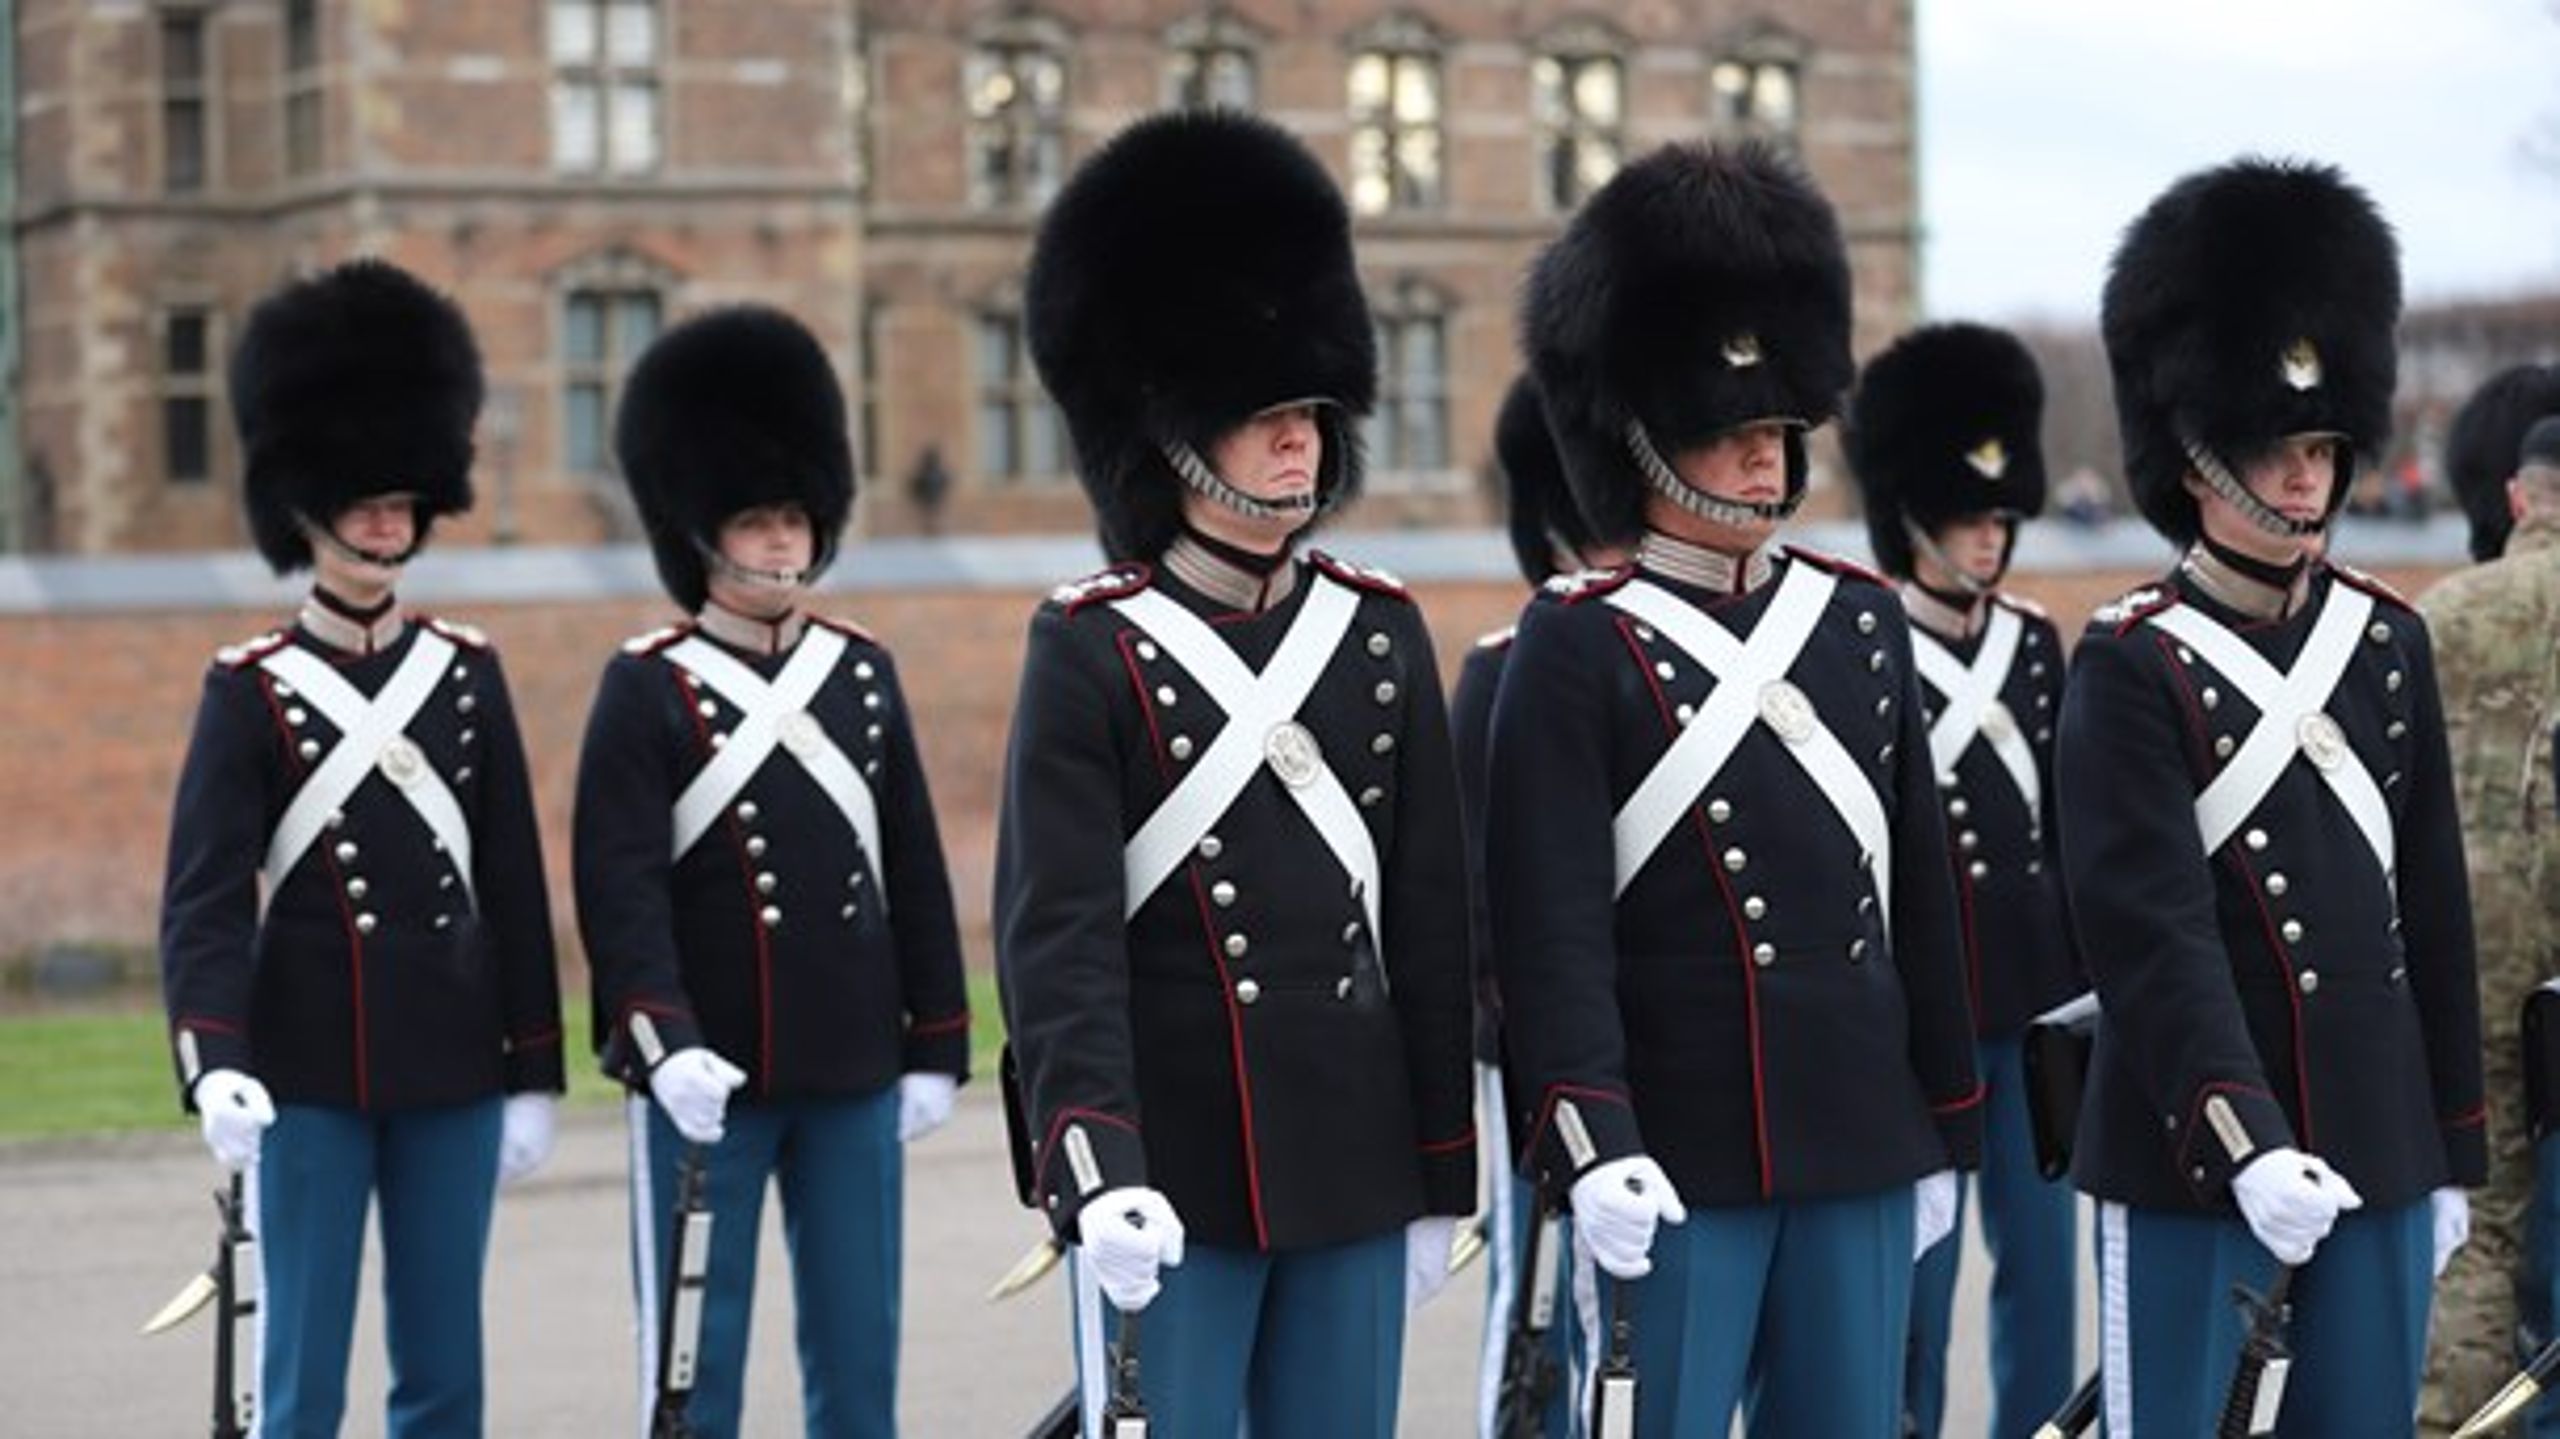 Værnepligtige gardere fra indkaldelseshold April 2018 ved Dronningeparade ved Livgardens Kaserne i København november 2018.